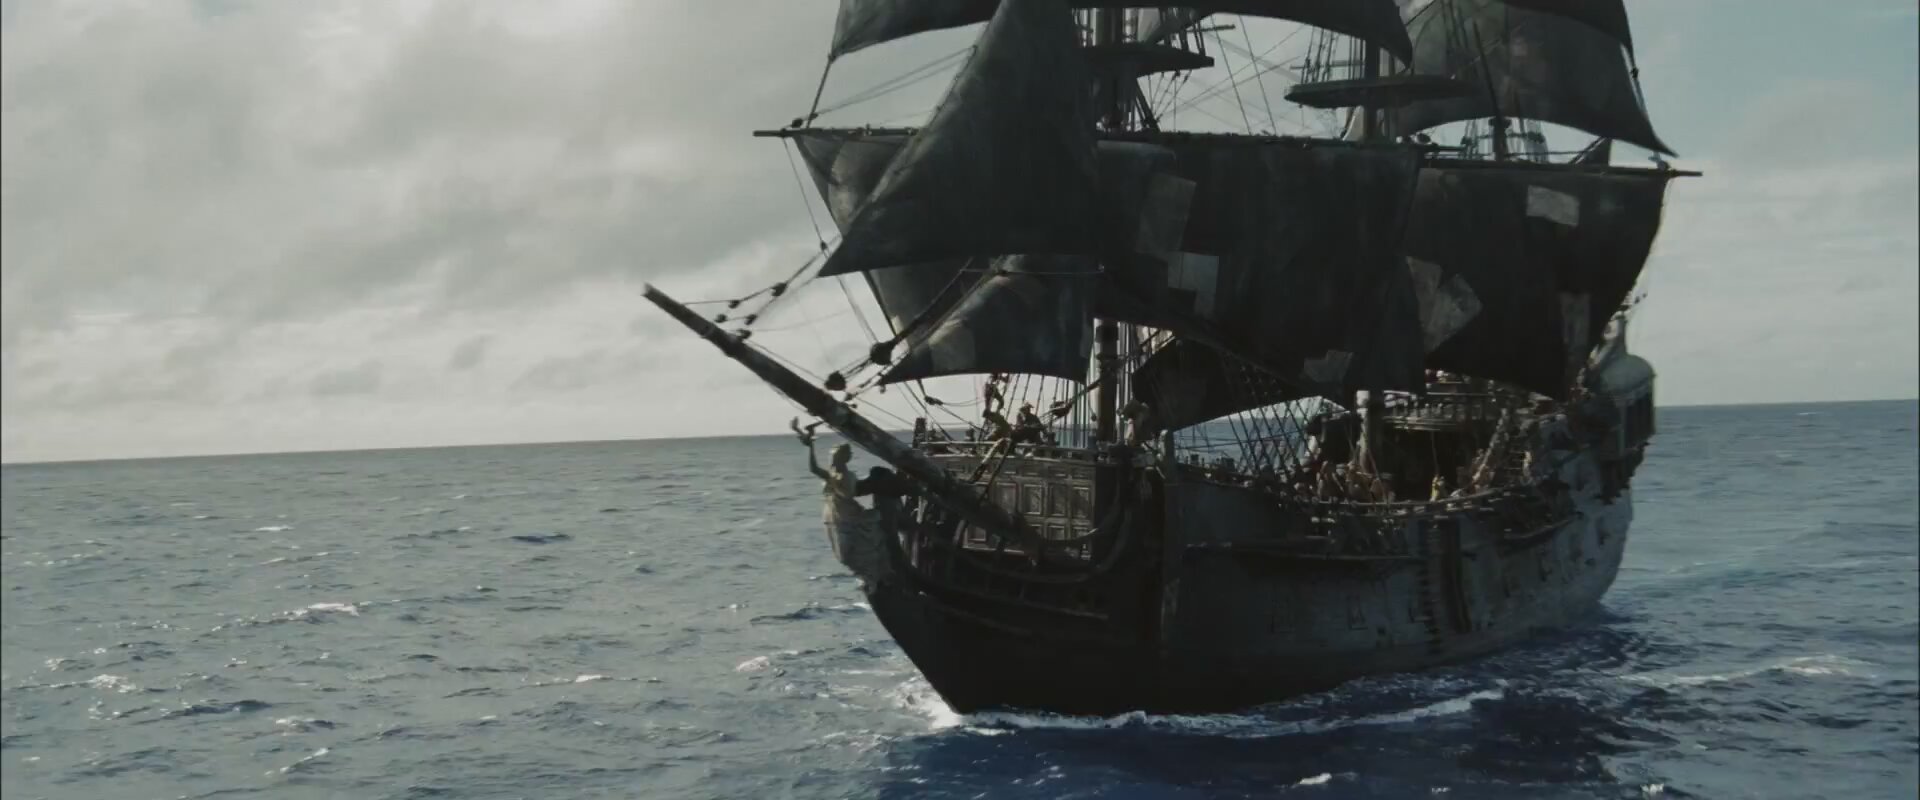 пираты карибского моря все корабли названия